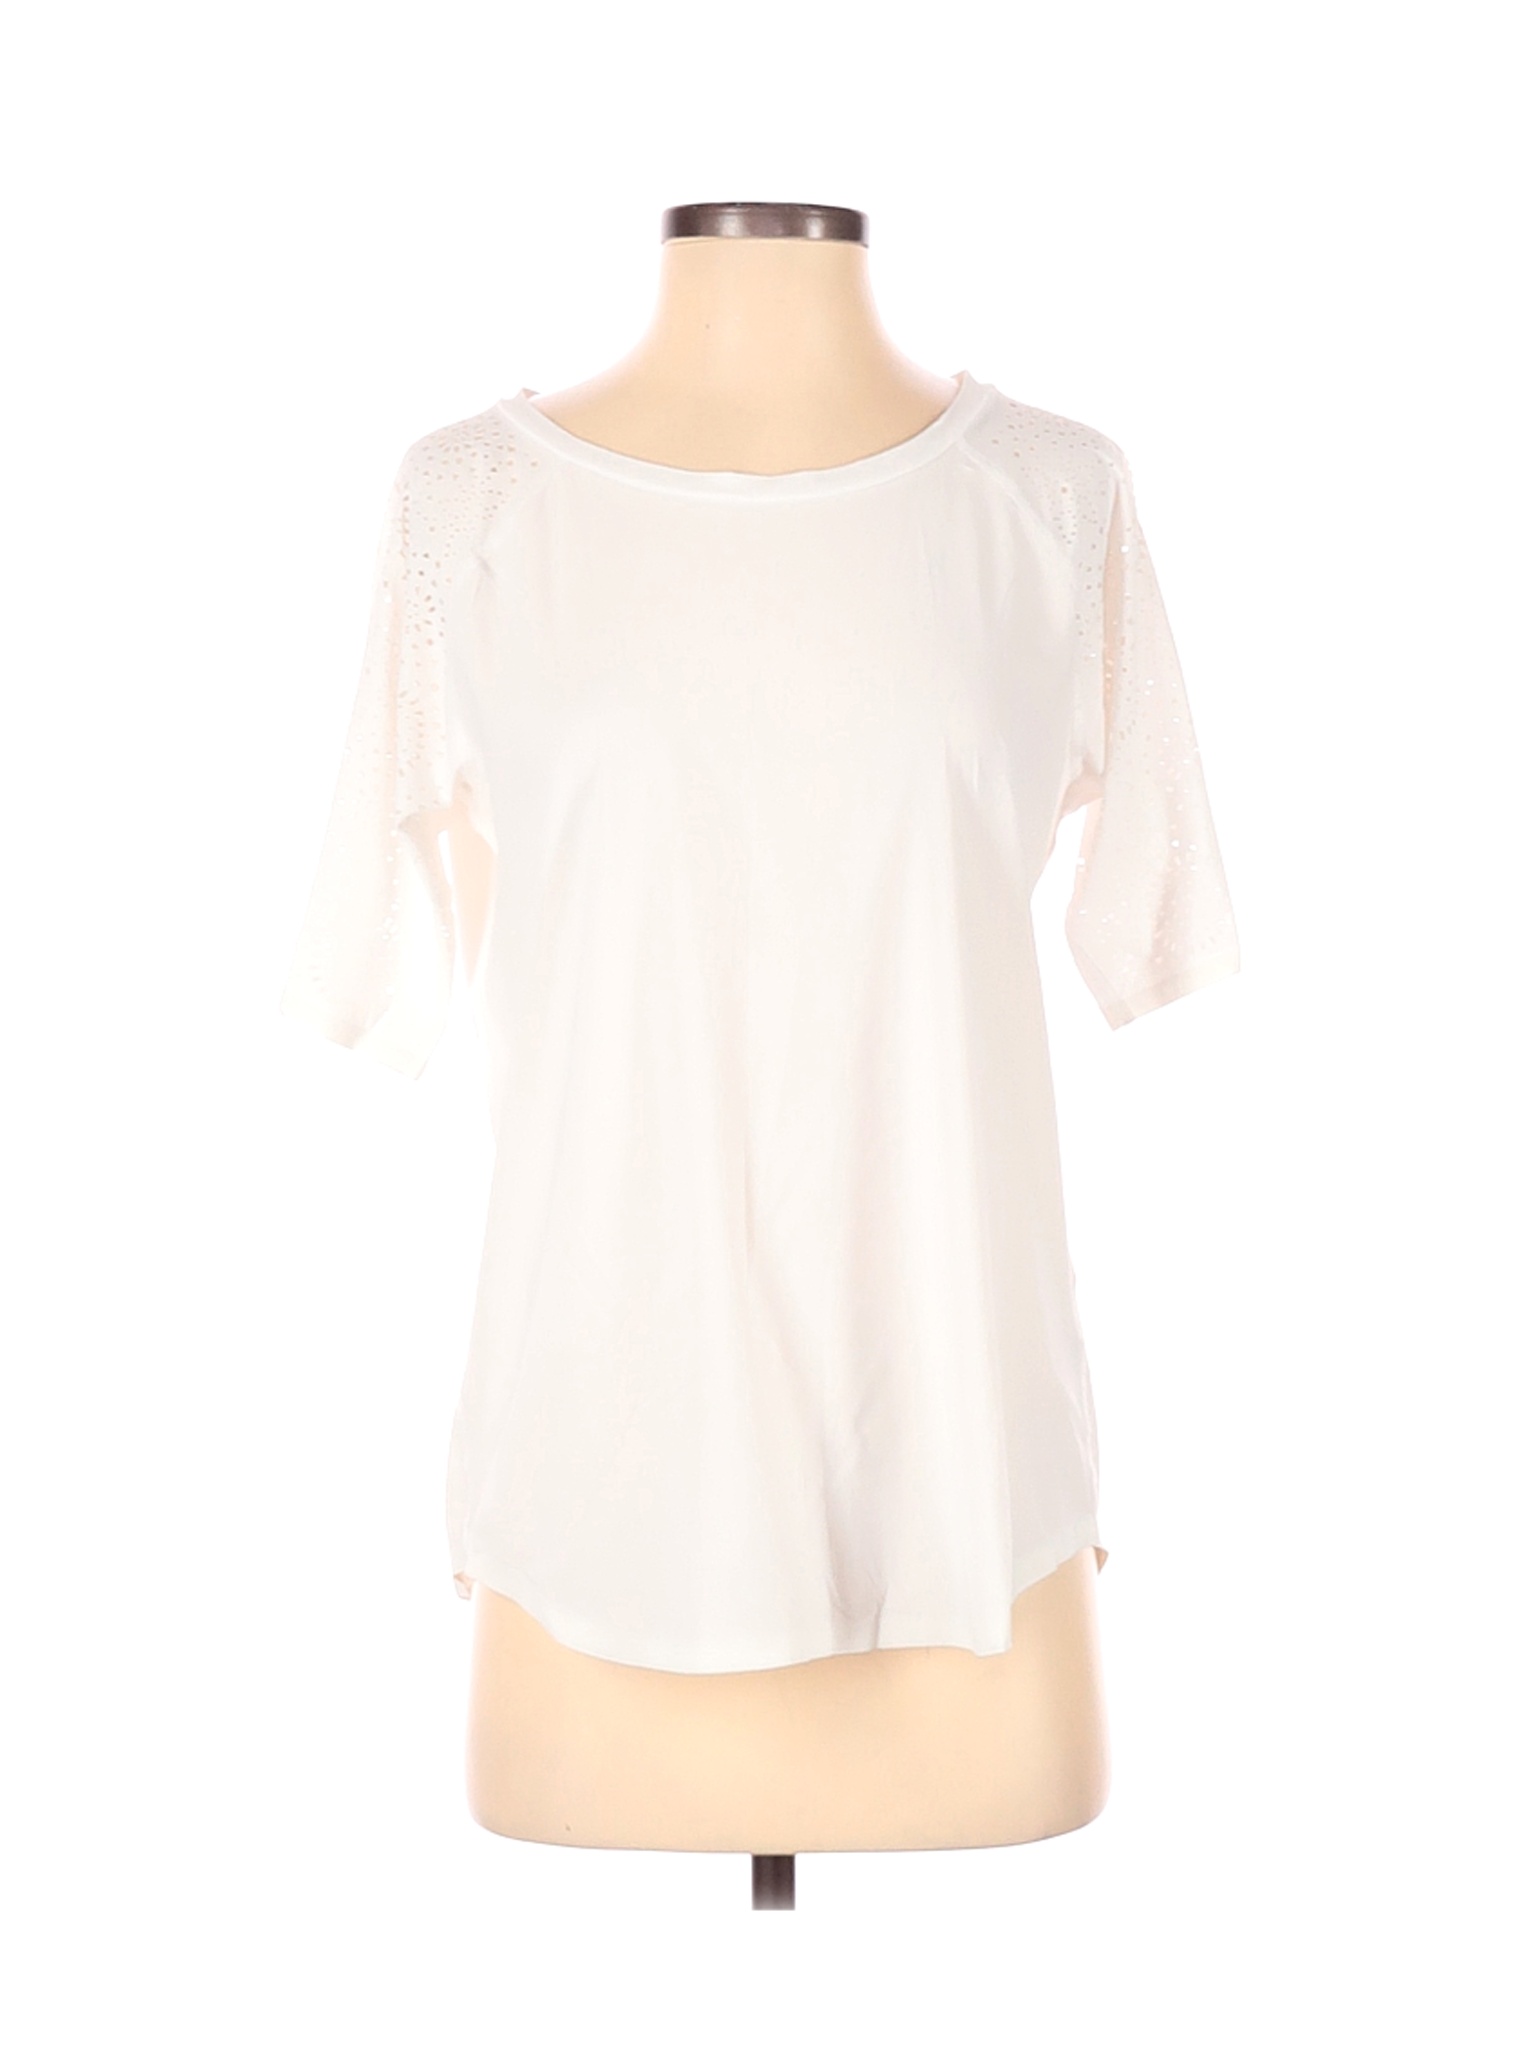 Banana Republic Women White Short Sleeve Blouse S | eBay